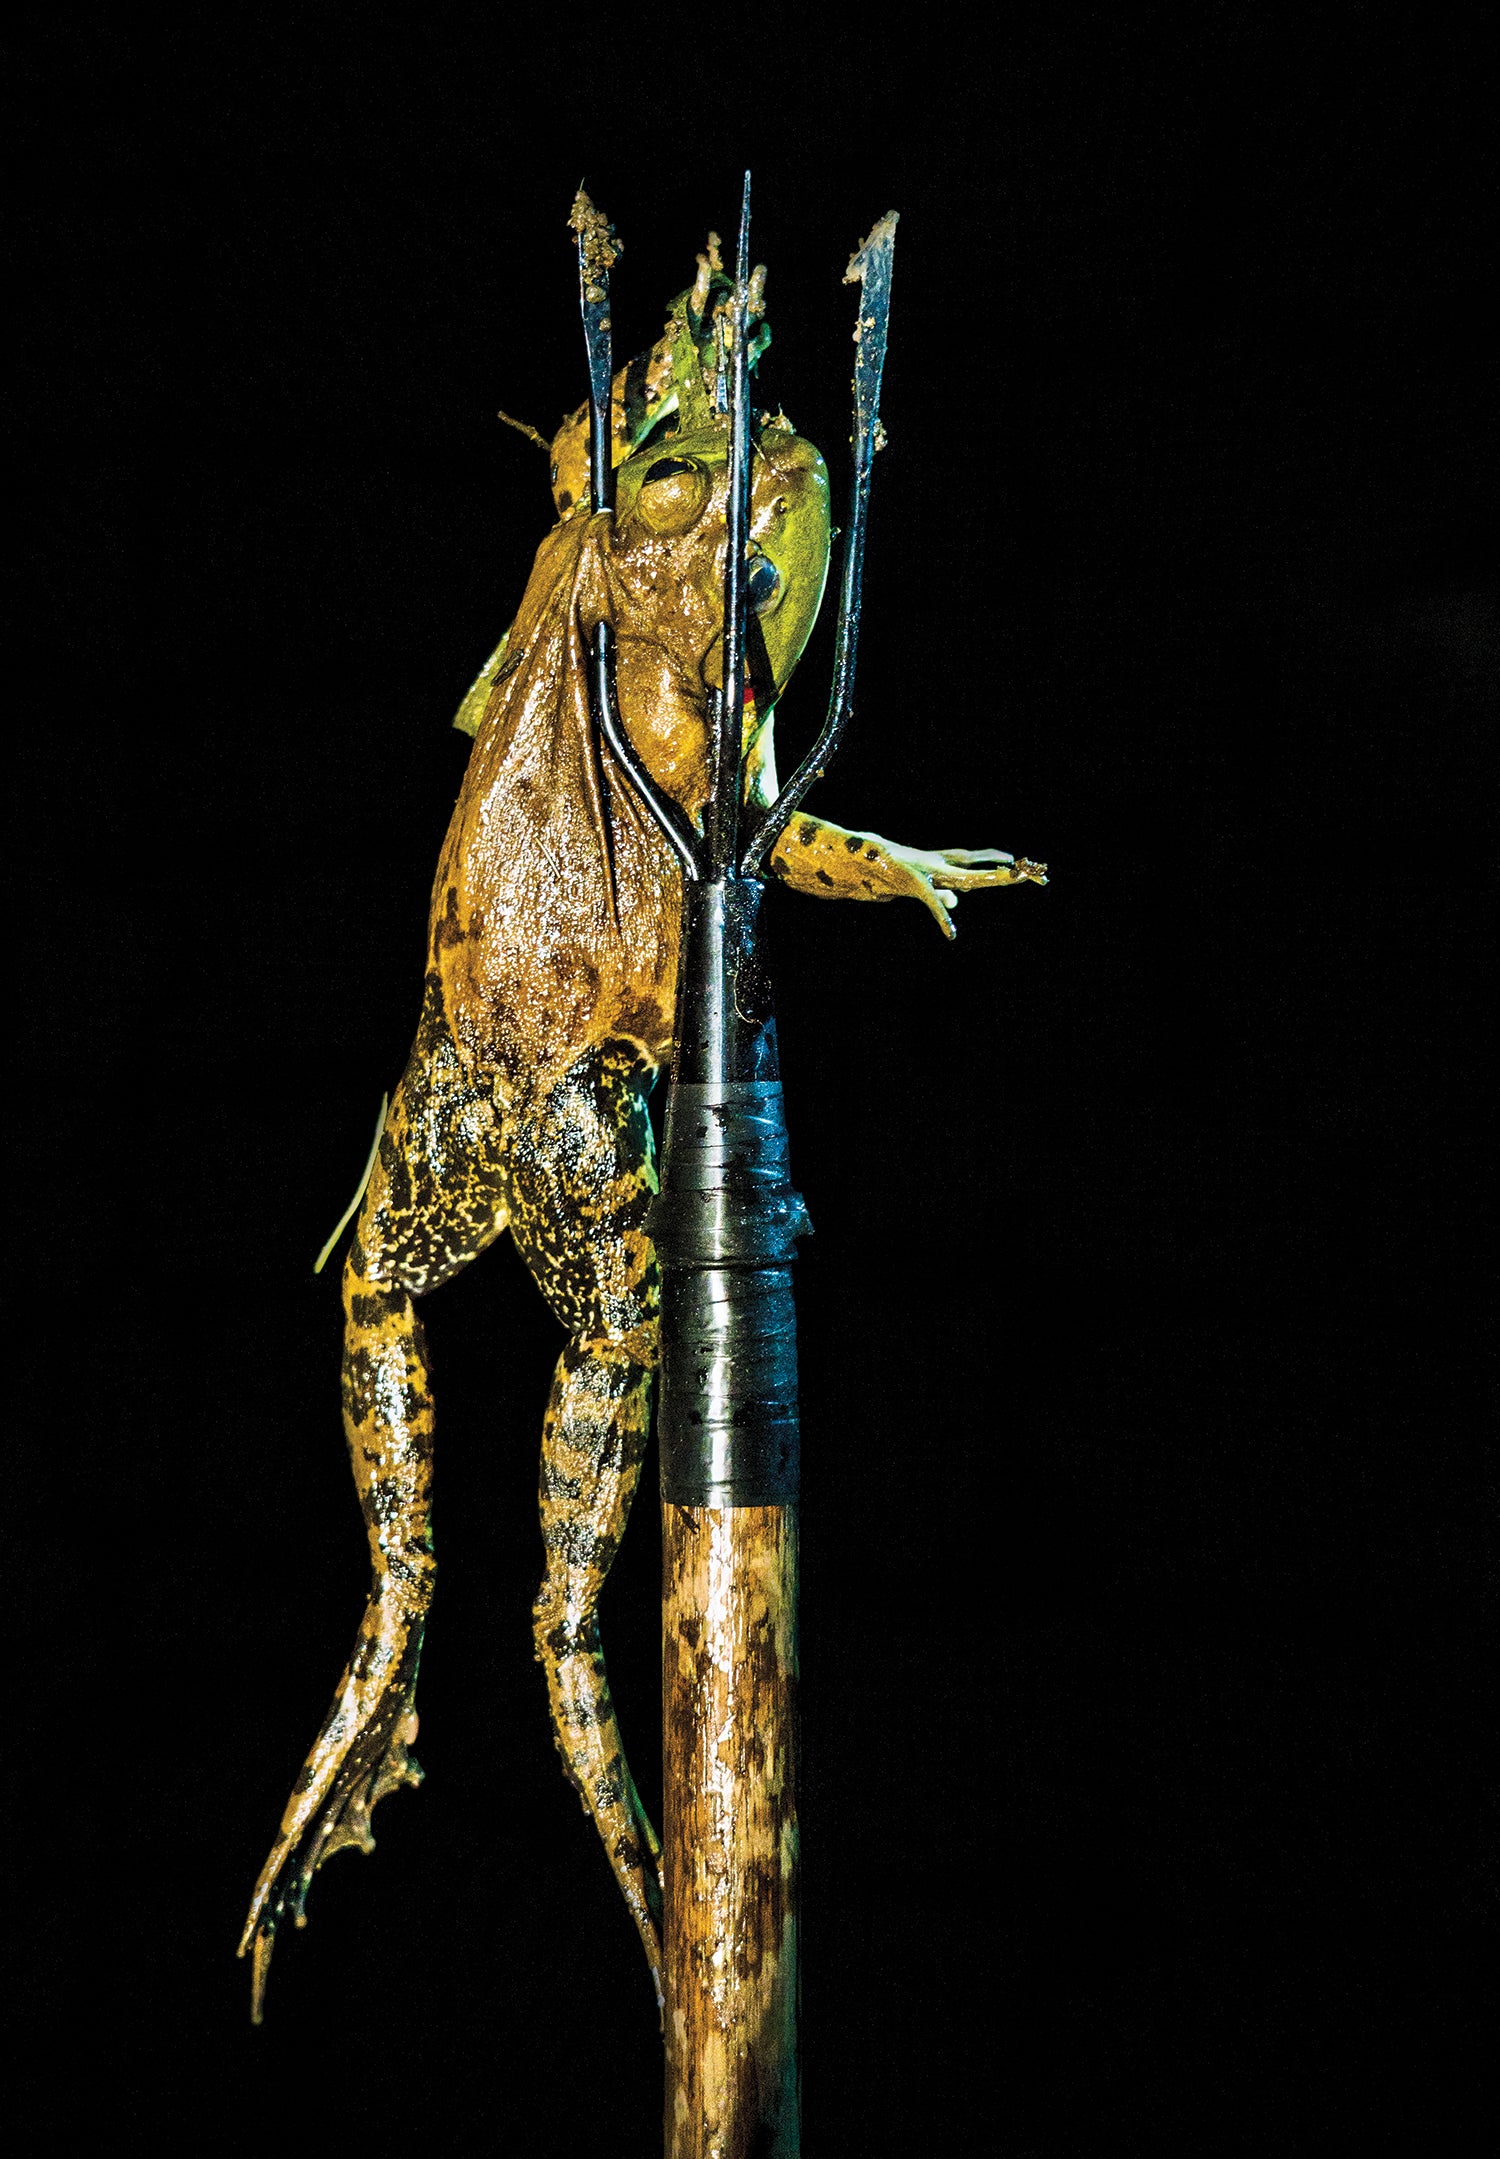 frog impaled on a gig